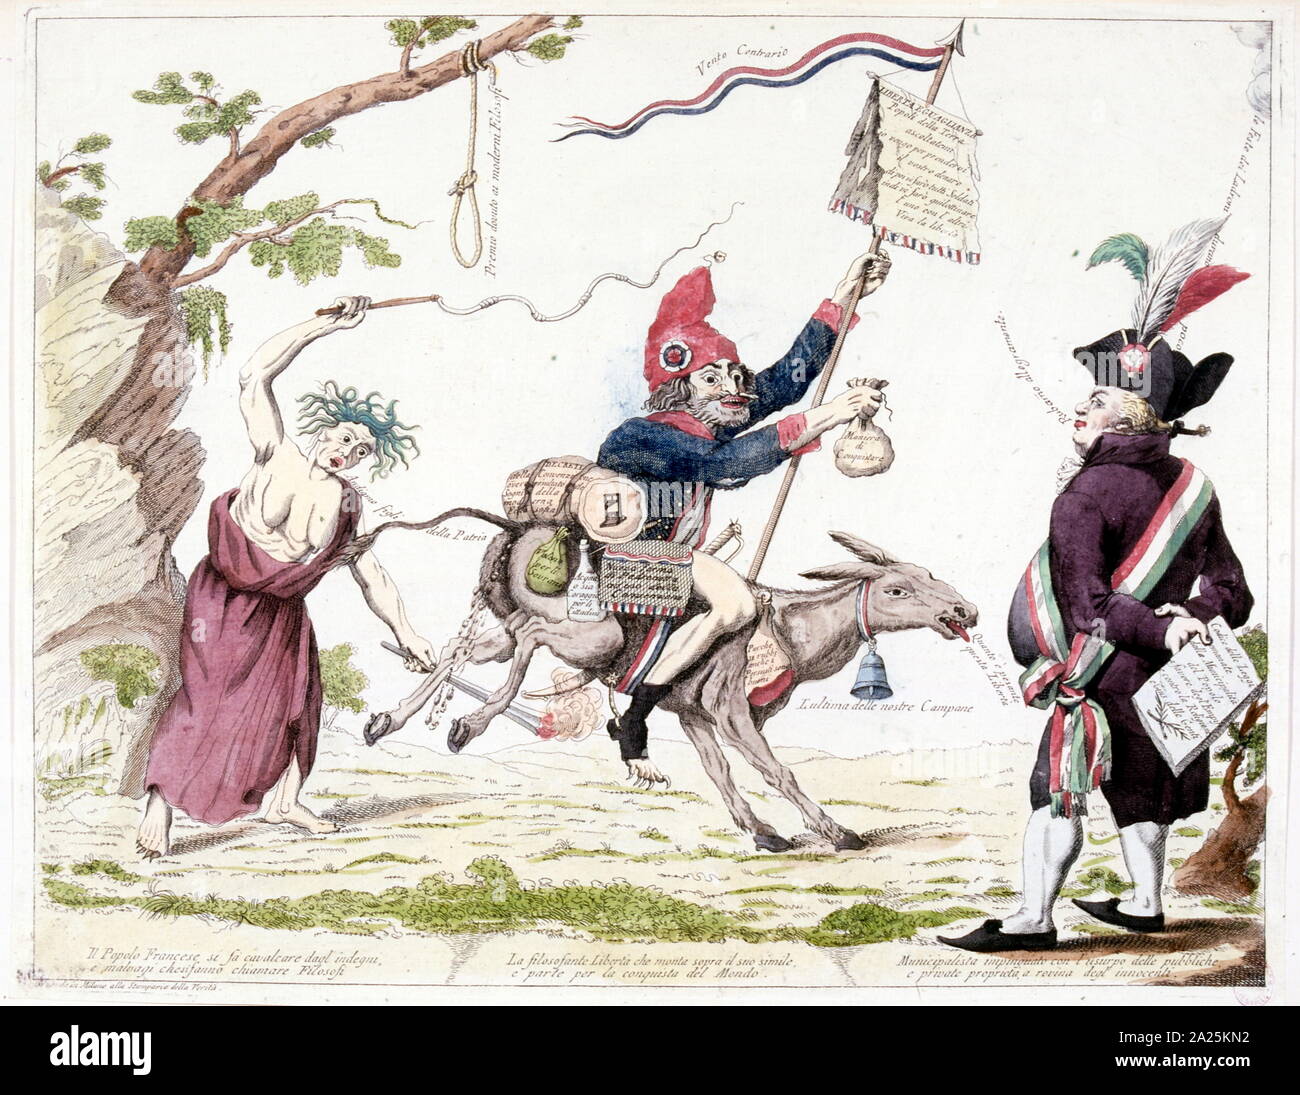 Ilustración satirising aspectos de la división de clases durante la Revolución Francesa de 1795 Foto de stock